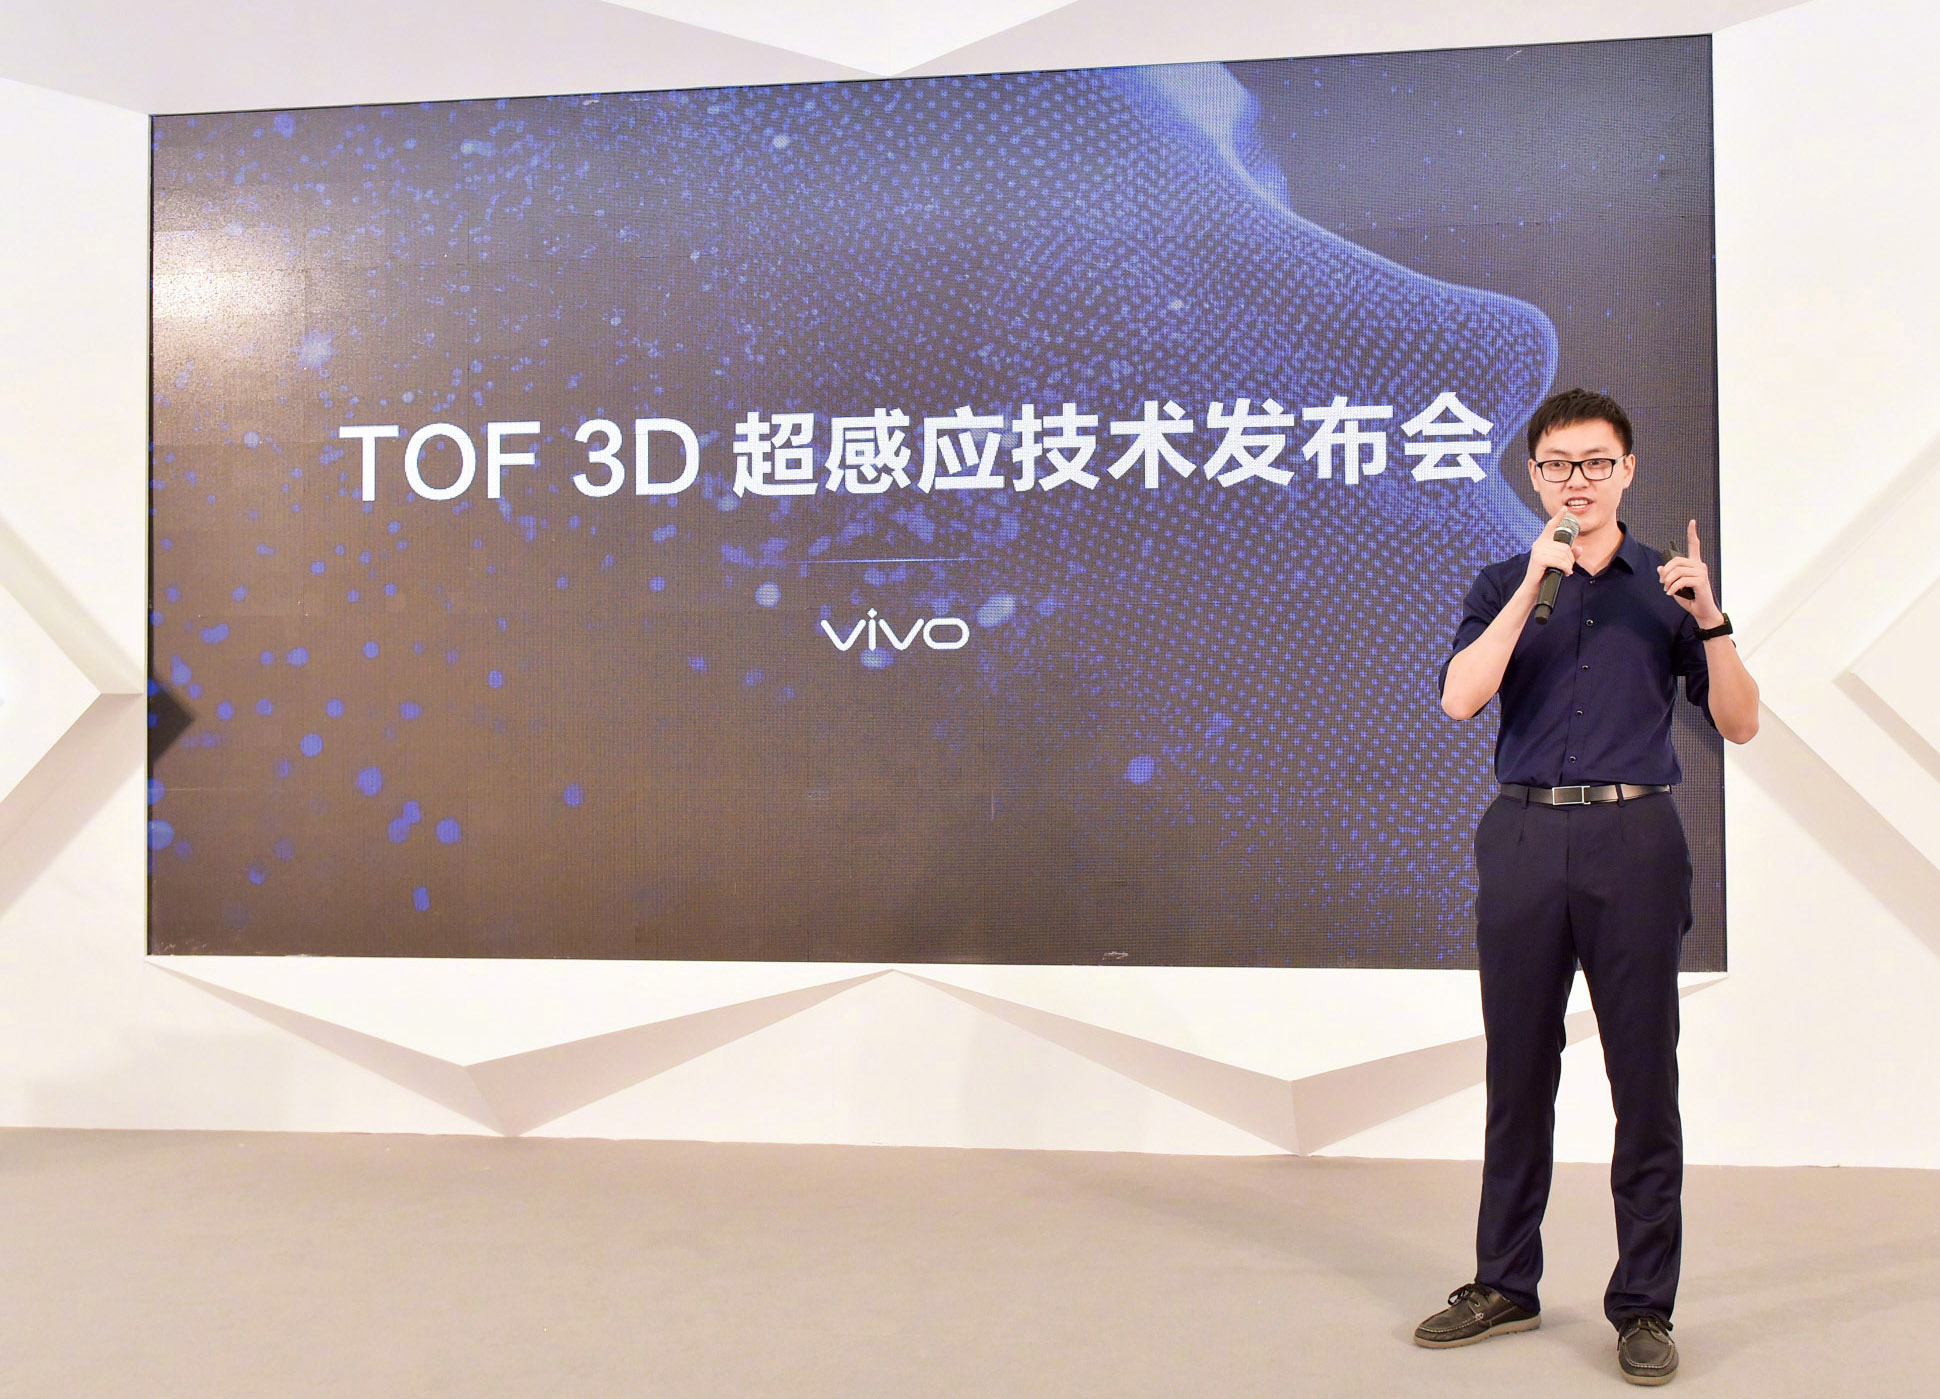 强过iPhone X结构光 vivo公布TOF 3D超感应技术